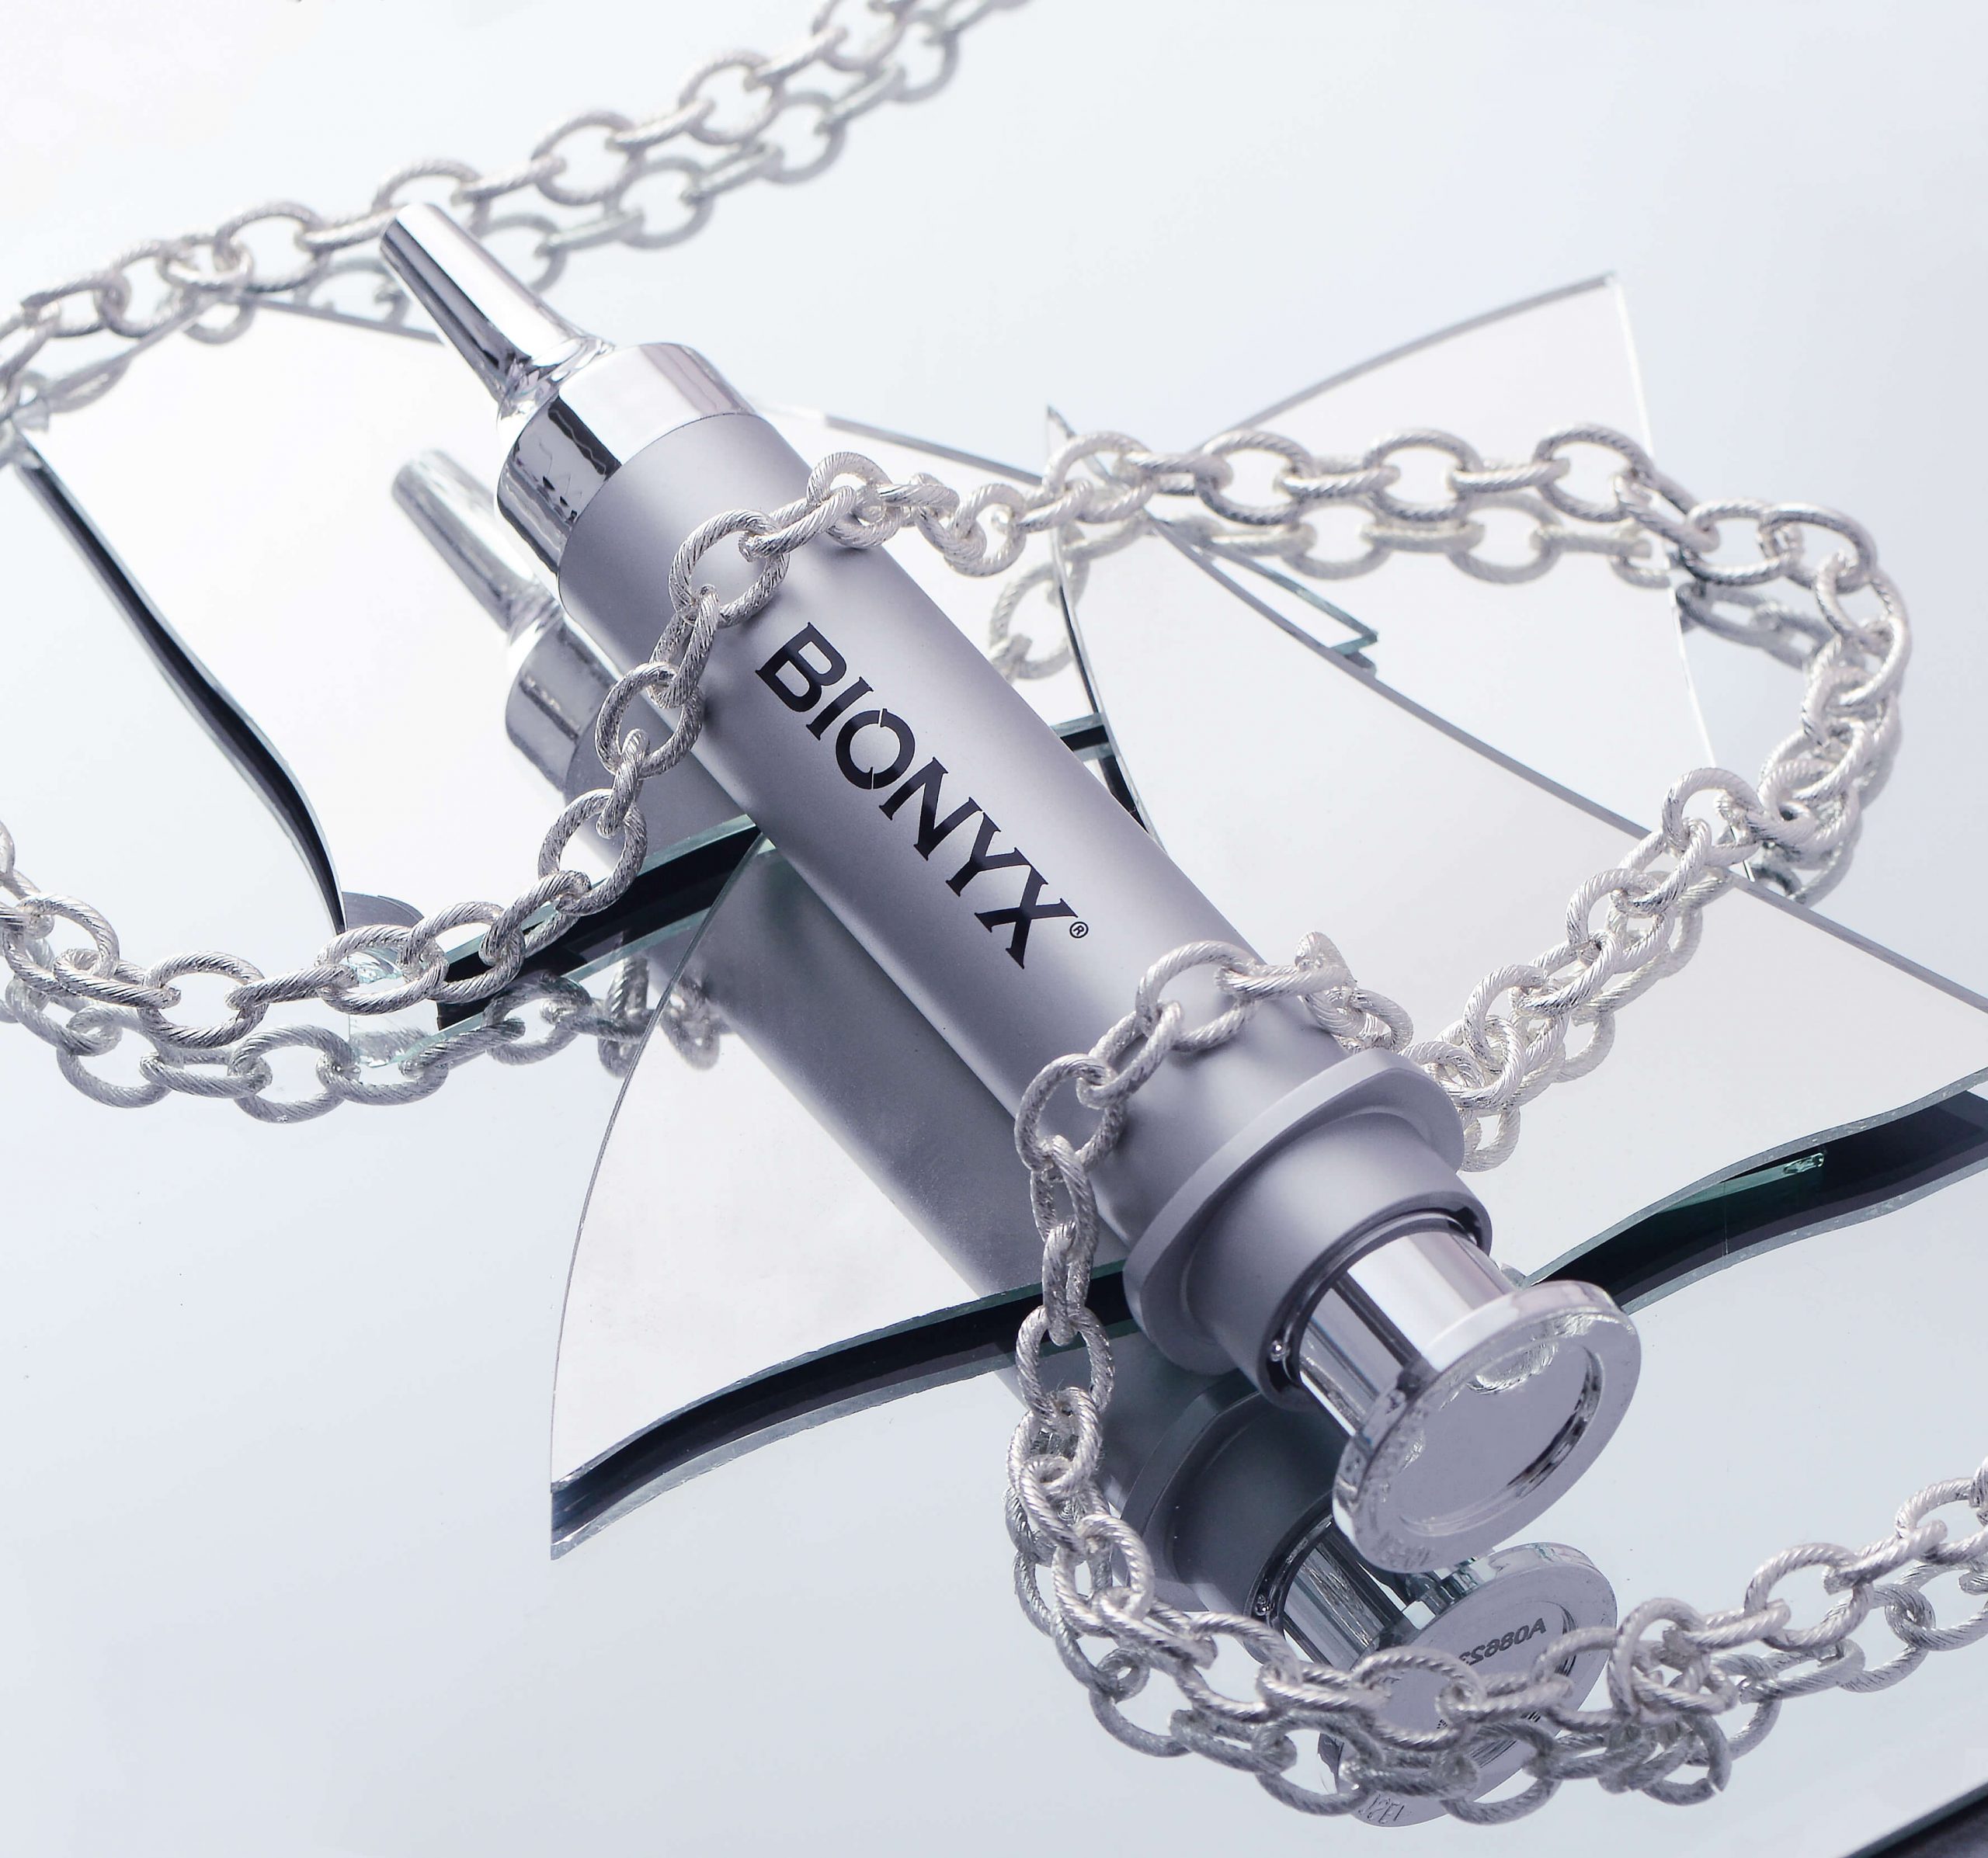 Bionyx syringe